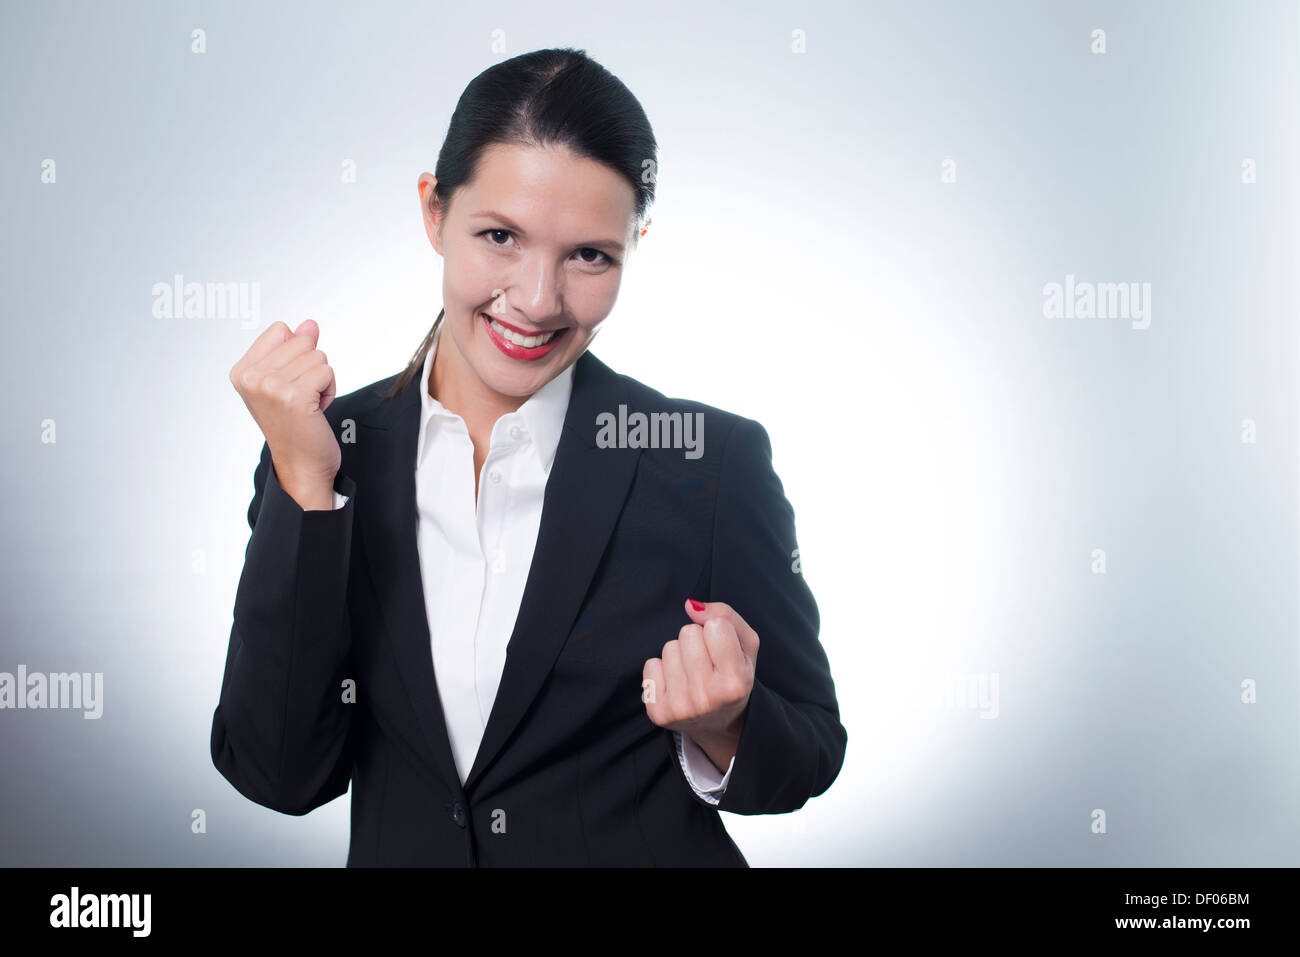 Schöne jubelnde junge Geschäftsfrau jubeln mit einem strahlenden begeisterten Lächeln auf ihrem Gesicht, als sie einen Erfolg feiert Stockfoto